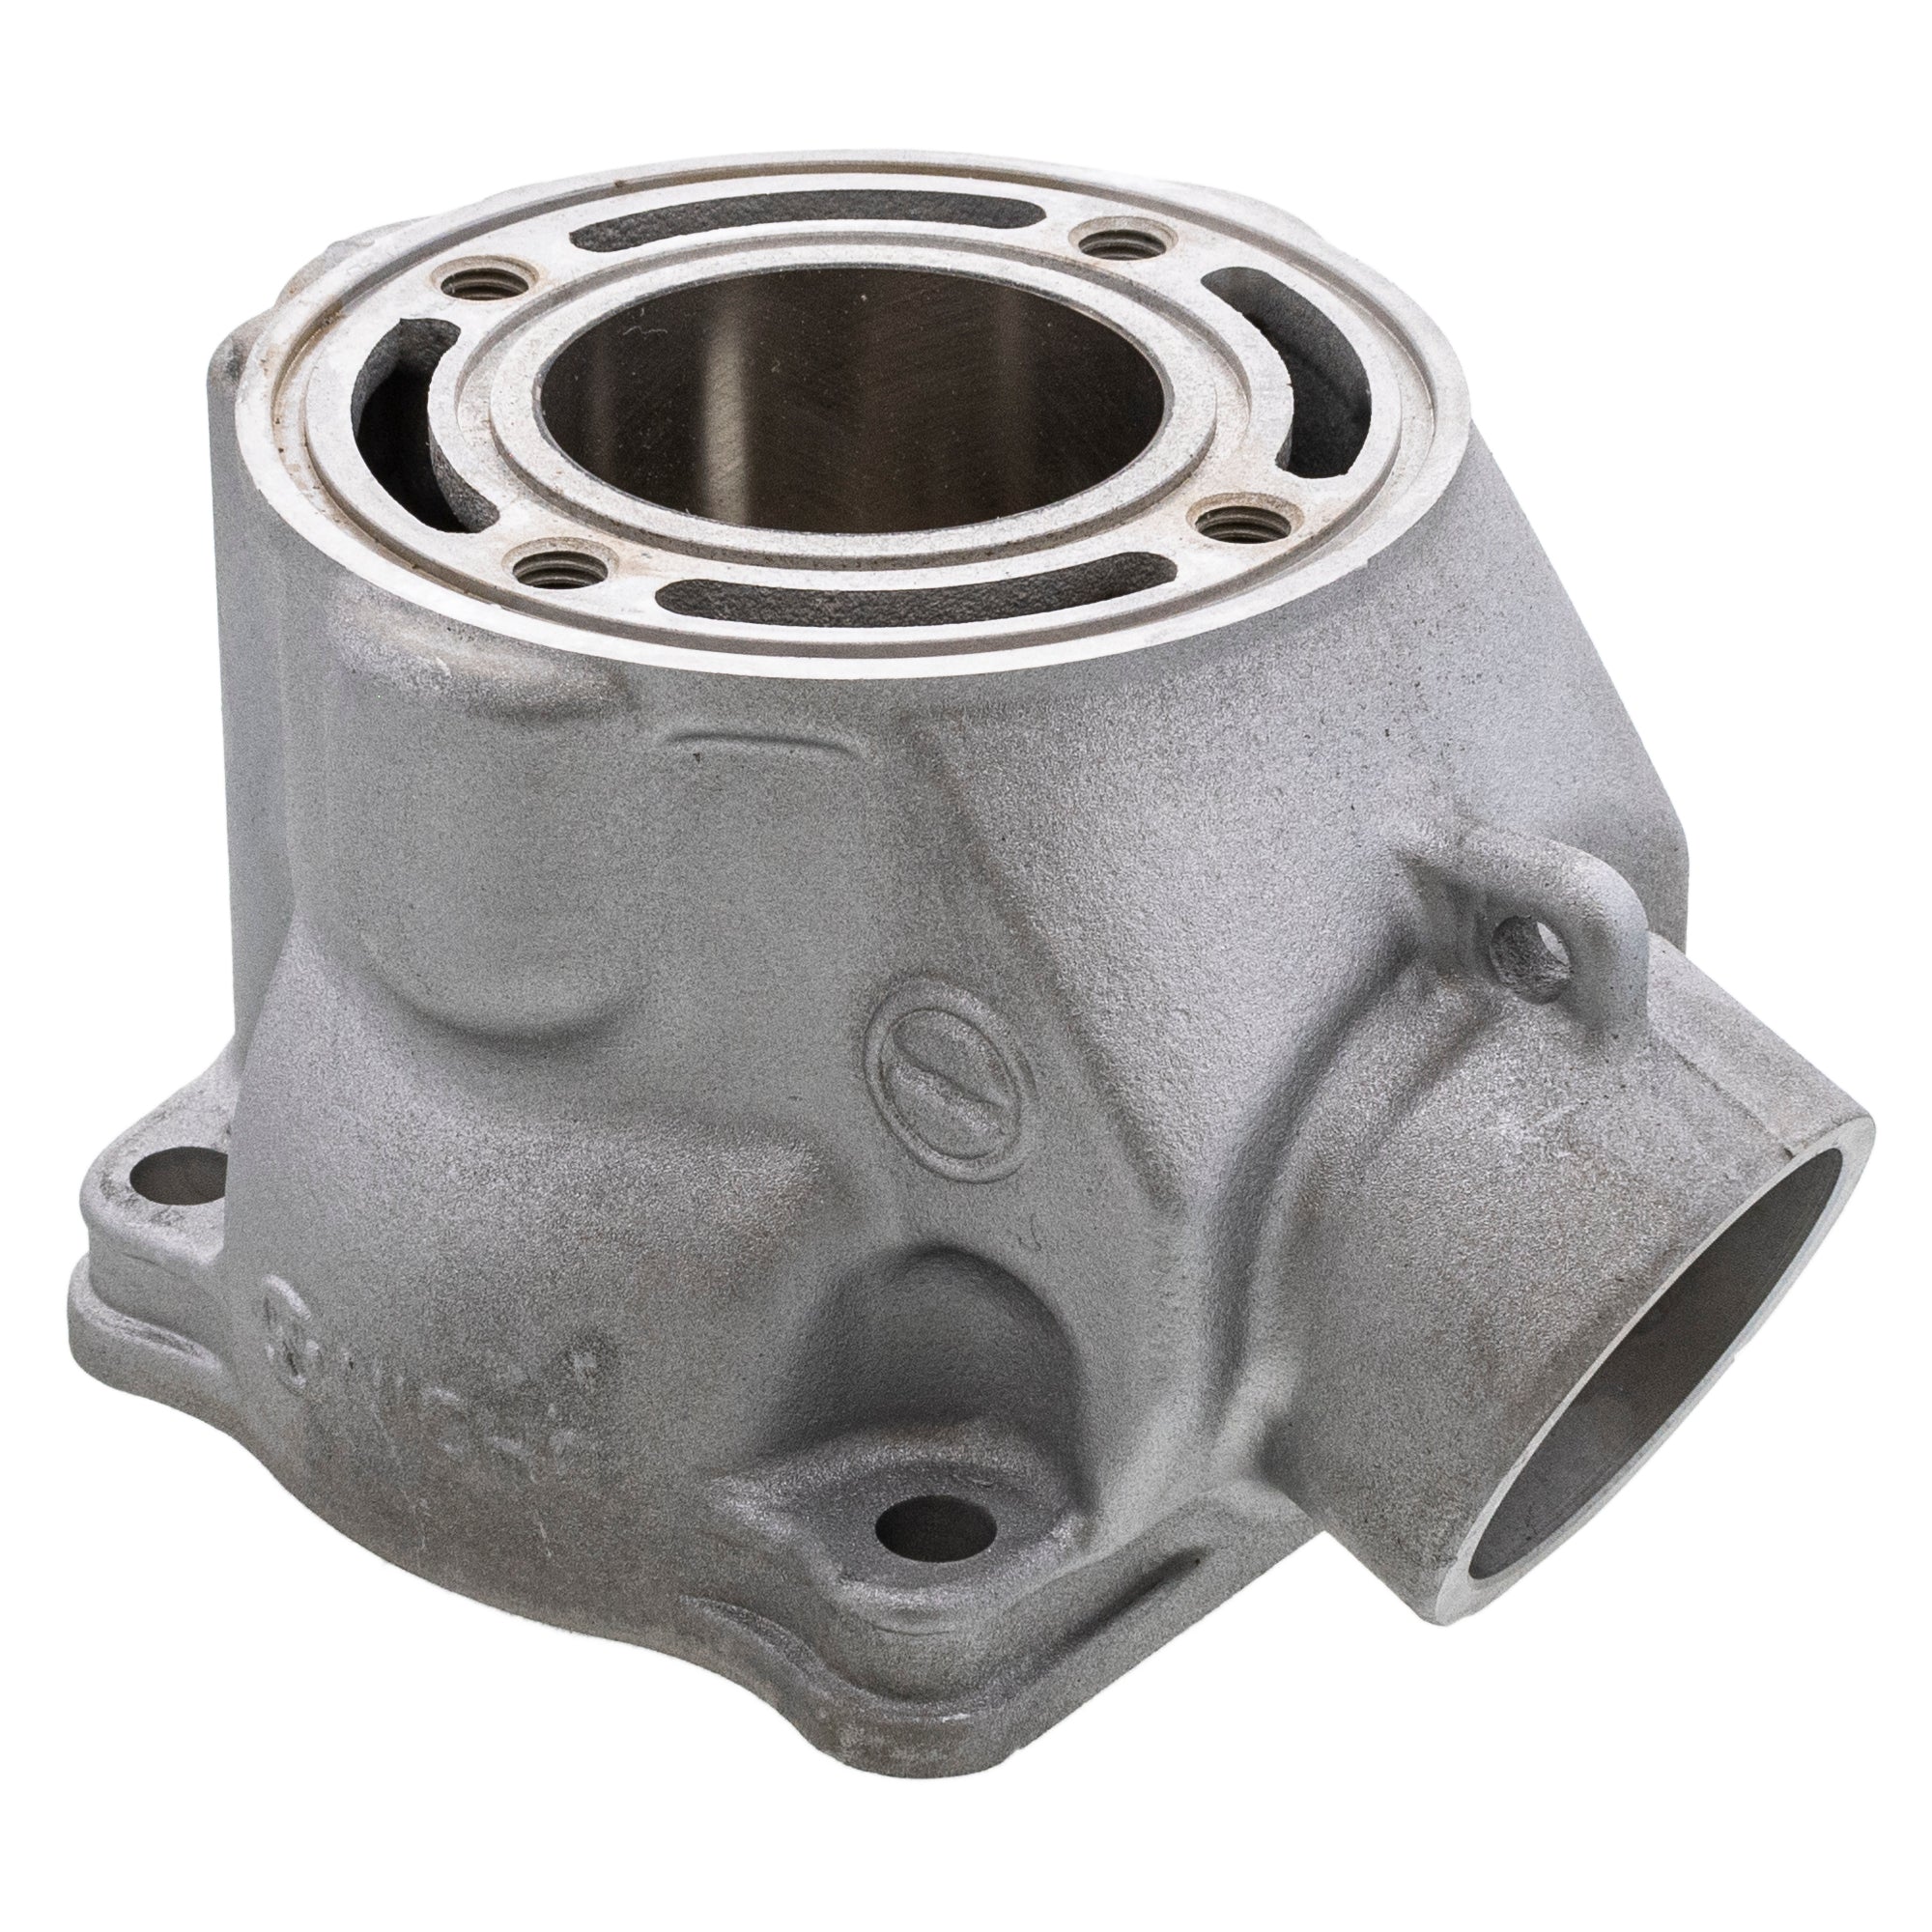 Engine Cylinder For Yamaha 5PA-11311-30-00 5PA-11311-20-00 5PA-11311-10-00  5PA-11311-01-00